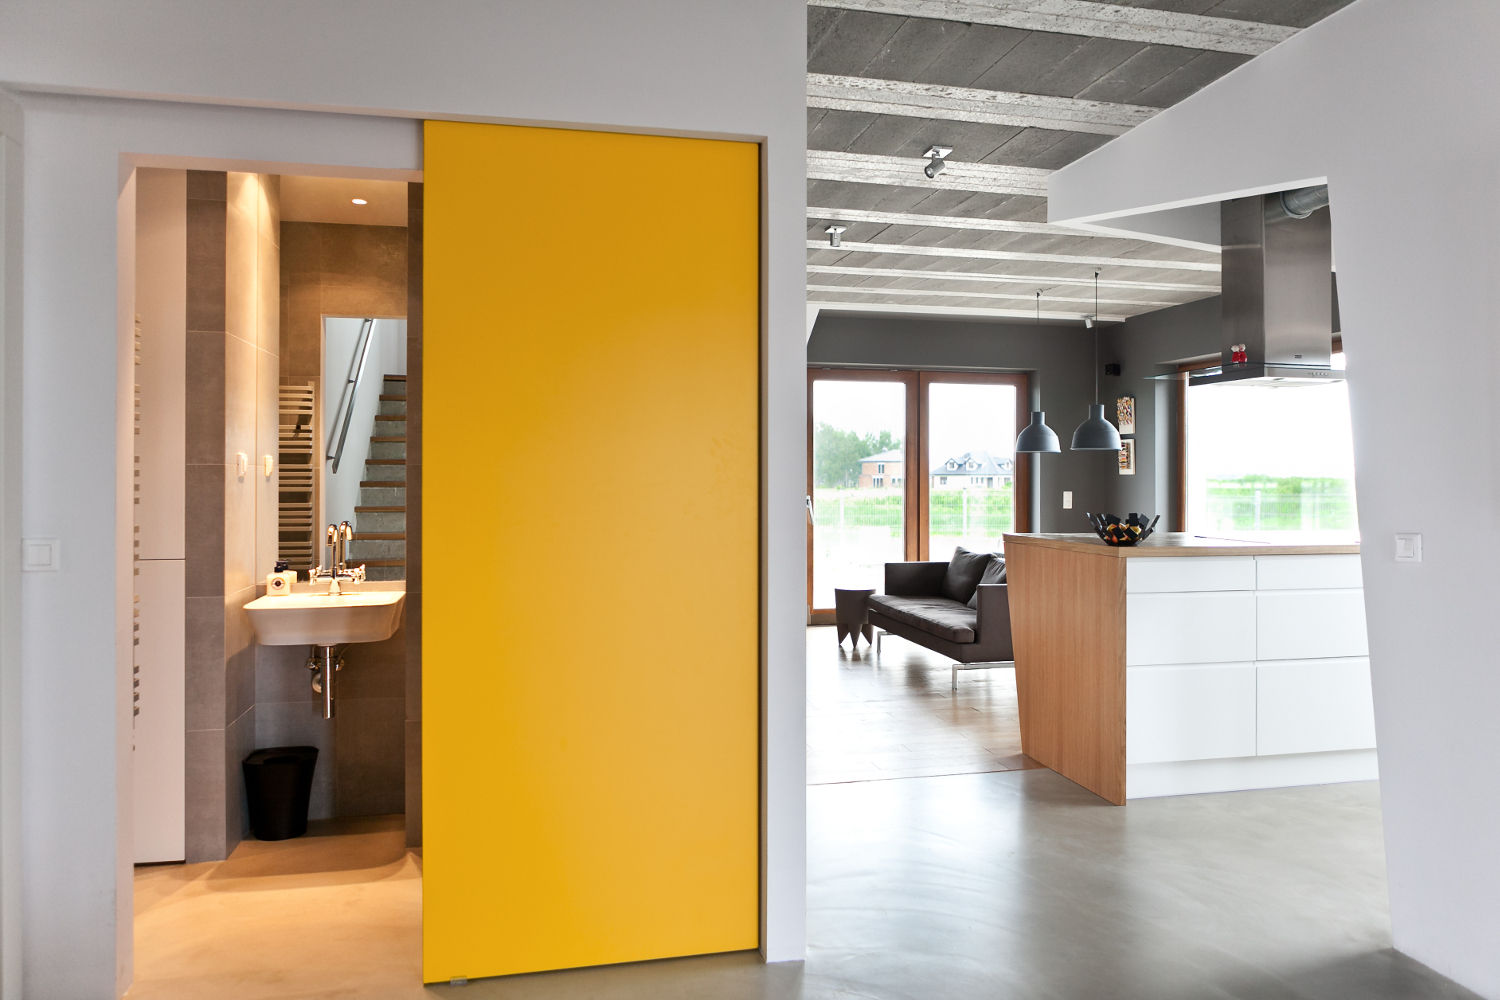 Beam & Block House, mode:lina™ mode:lina™ Corredores, halls e escadas modernos